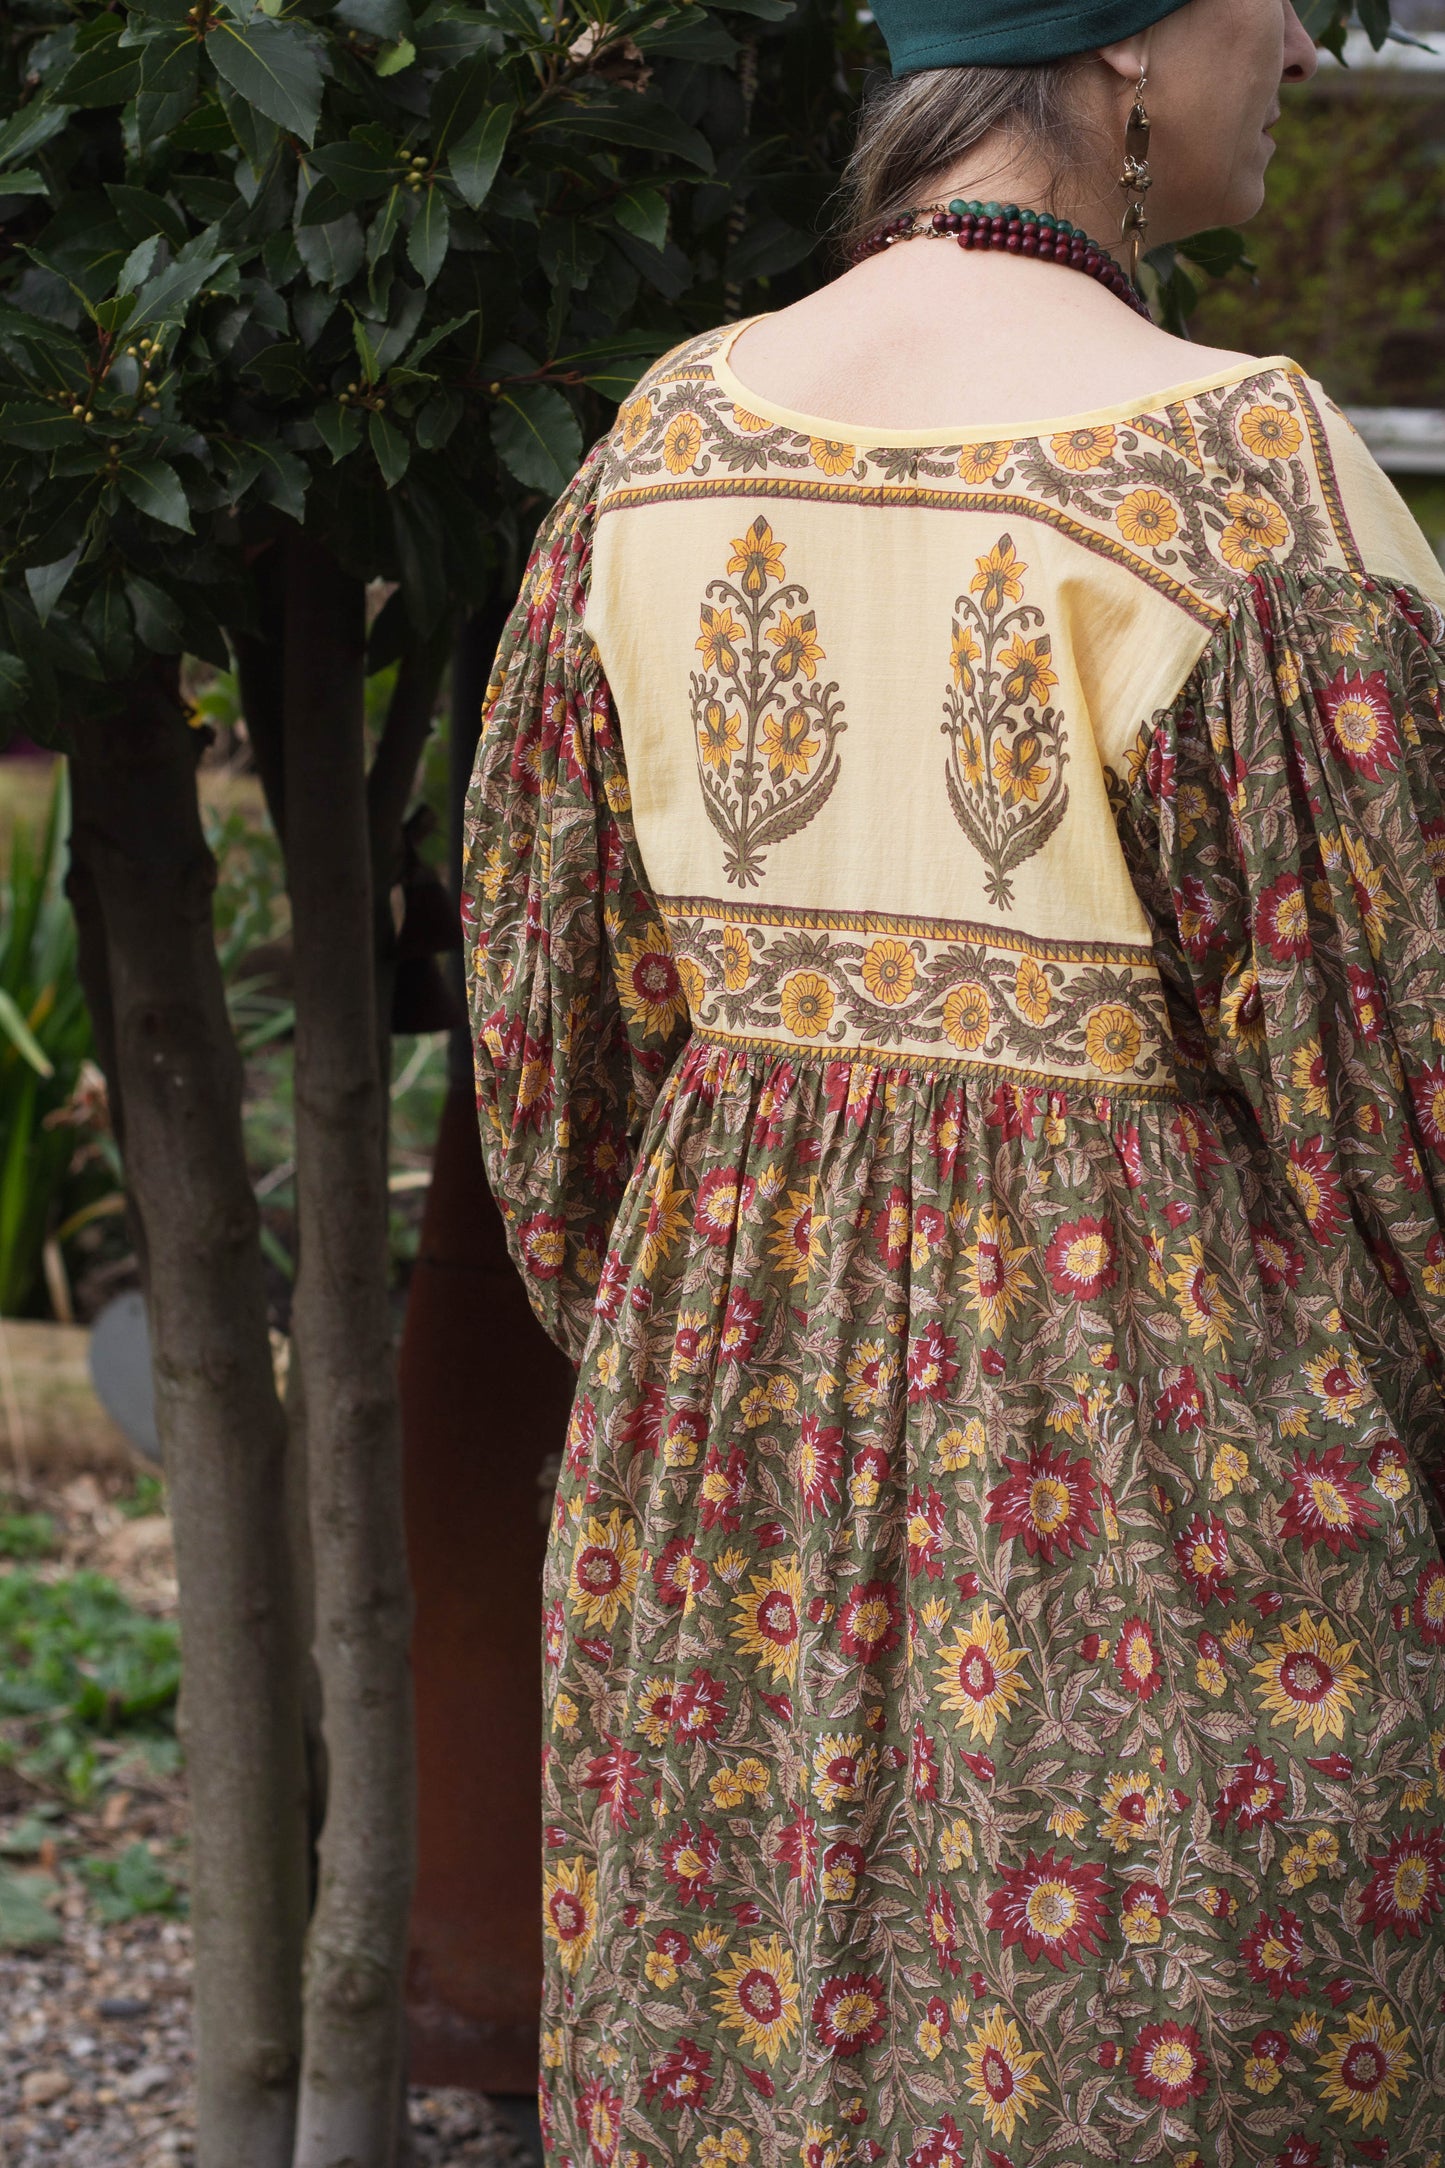 The Peniflora Dress